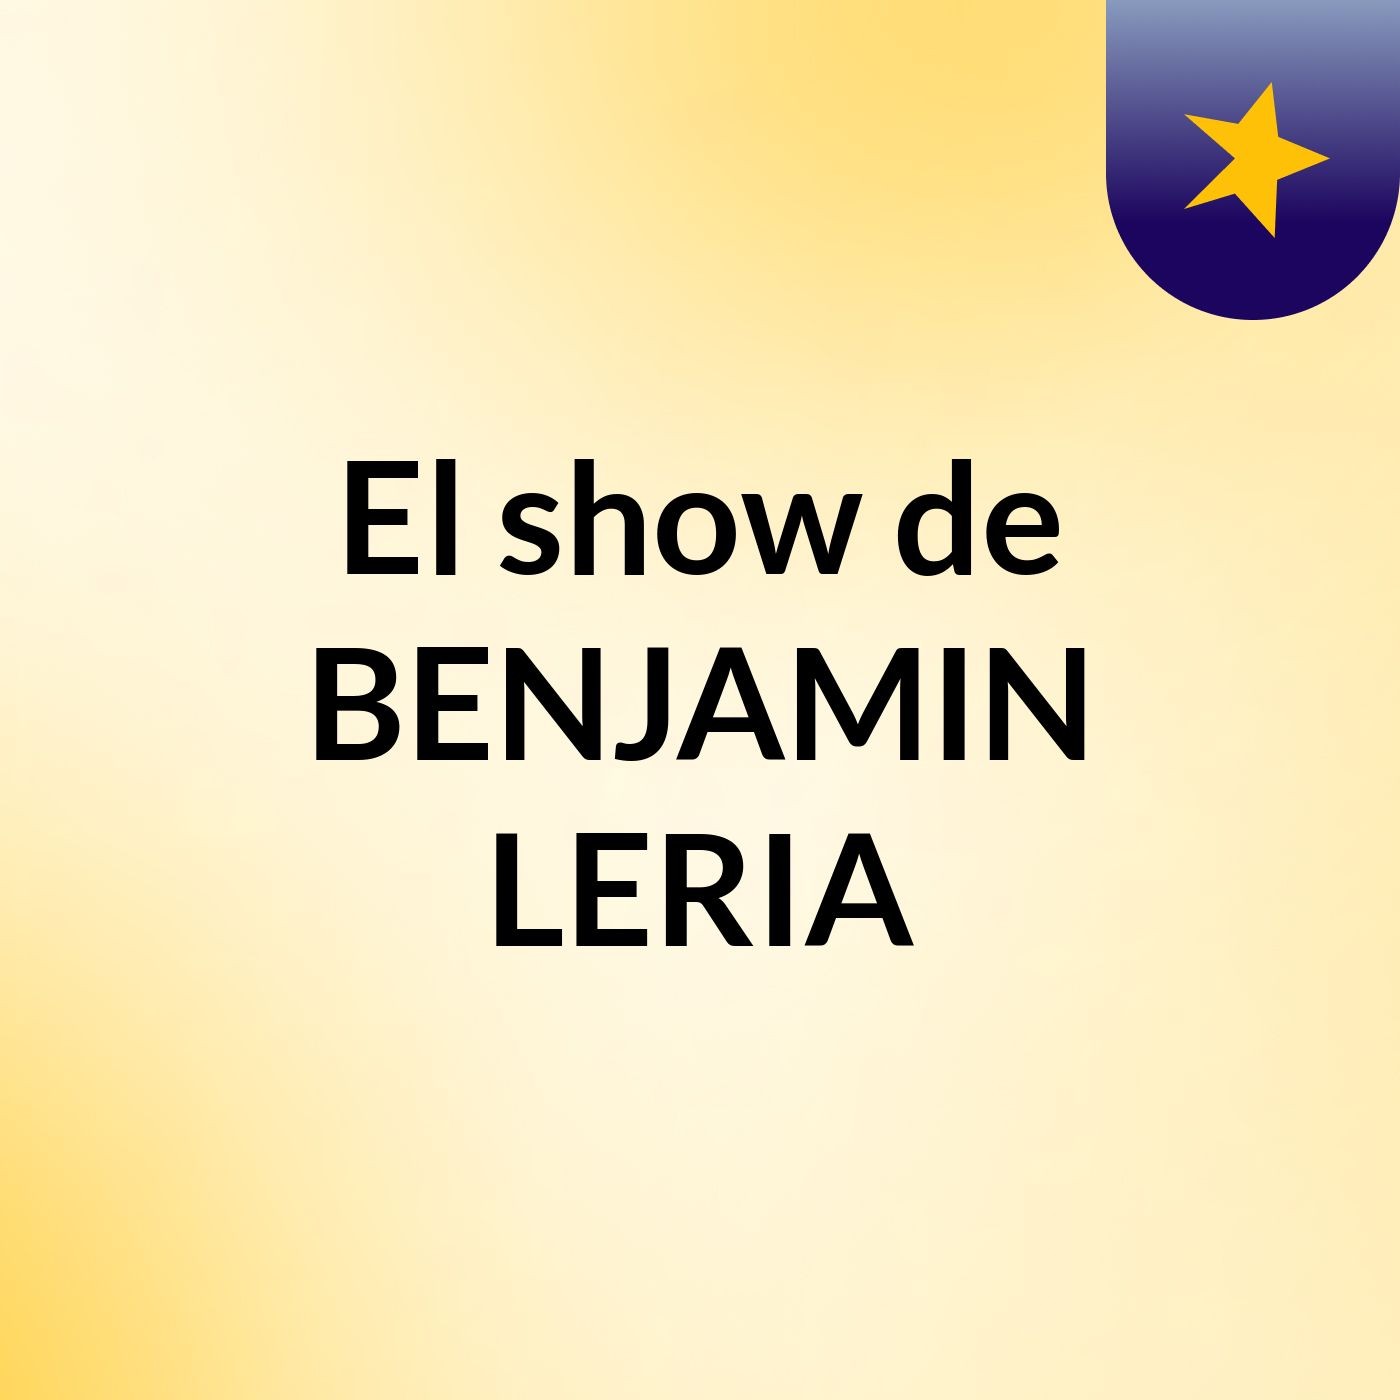 Episodio 8 - El show de BENJAMIN LERIA